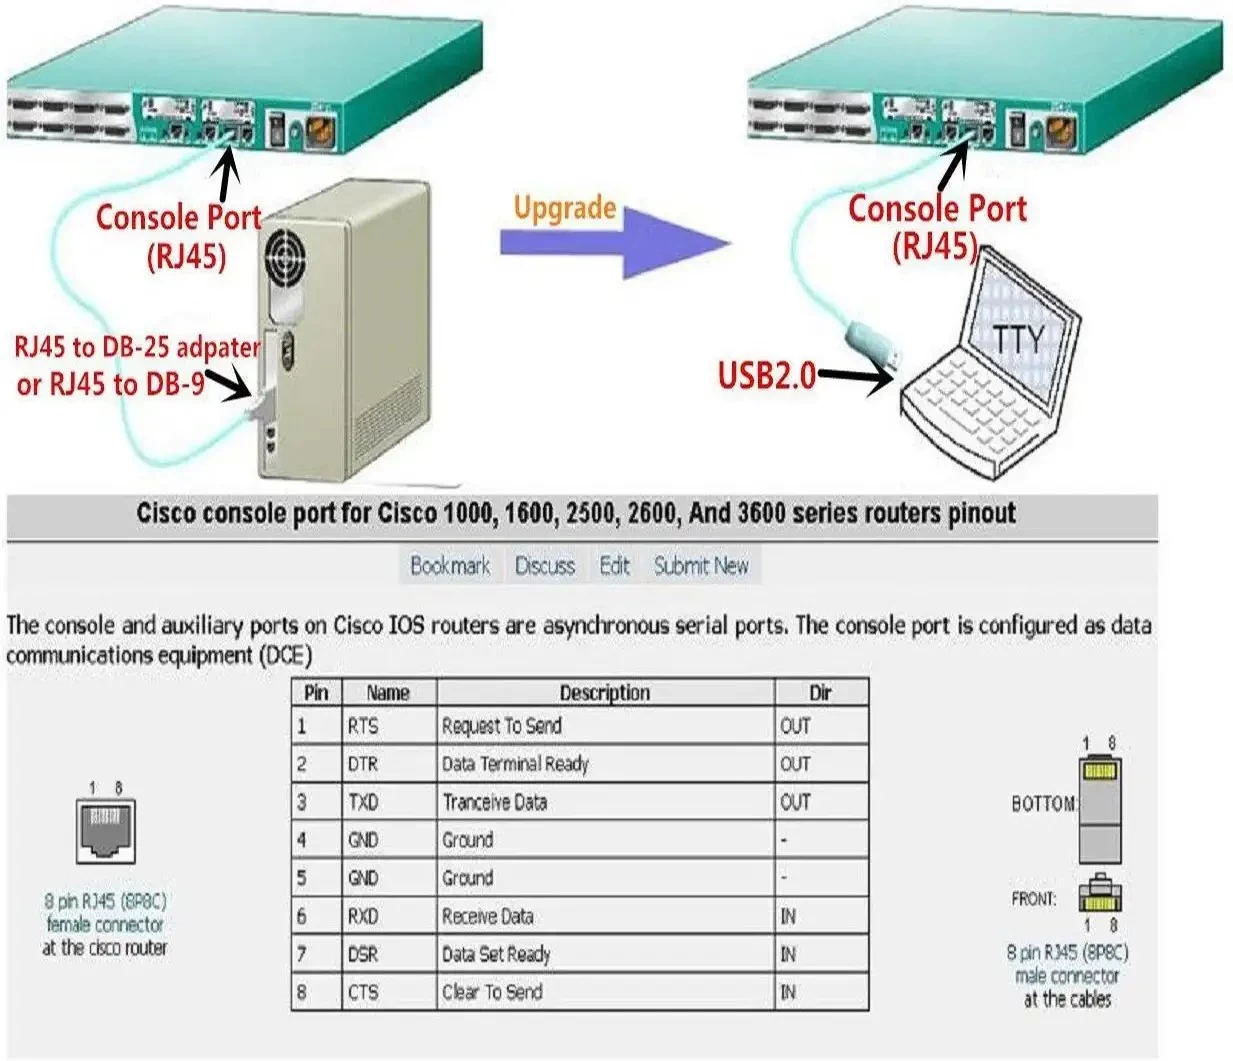 中国 用于 Cisco 路由器电缆 Ftdi 芯片组 USB 到 Rj45 适配器电缆的替换 USB 控制台电缆，适用于 Windows、Mac、Linux 中的笔记本电脑 制造商